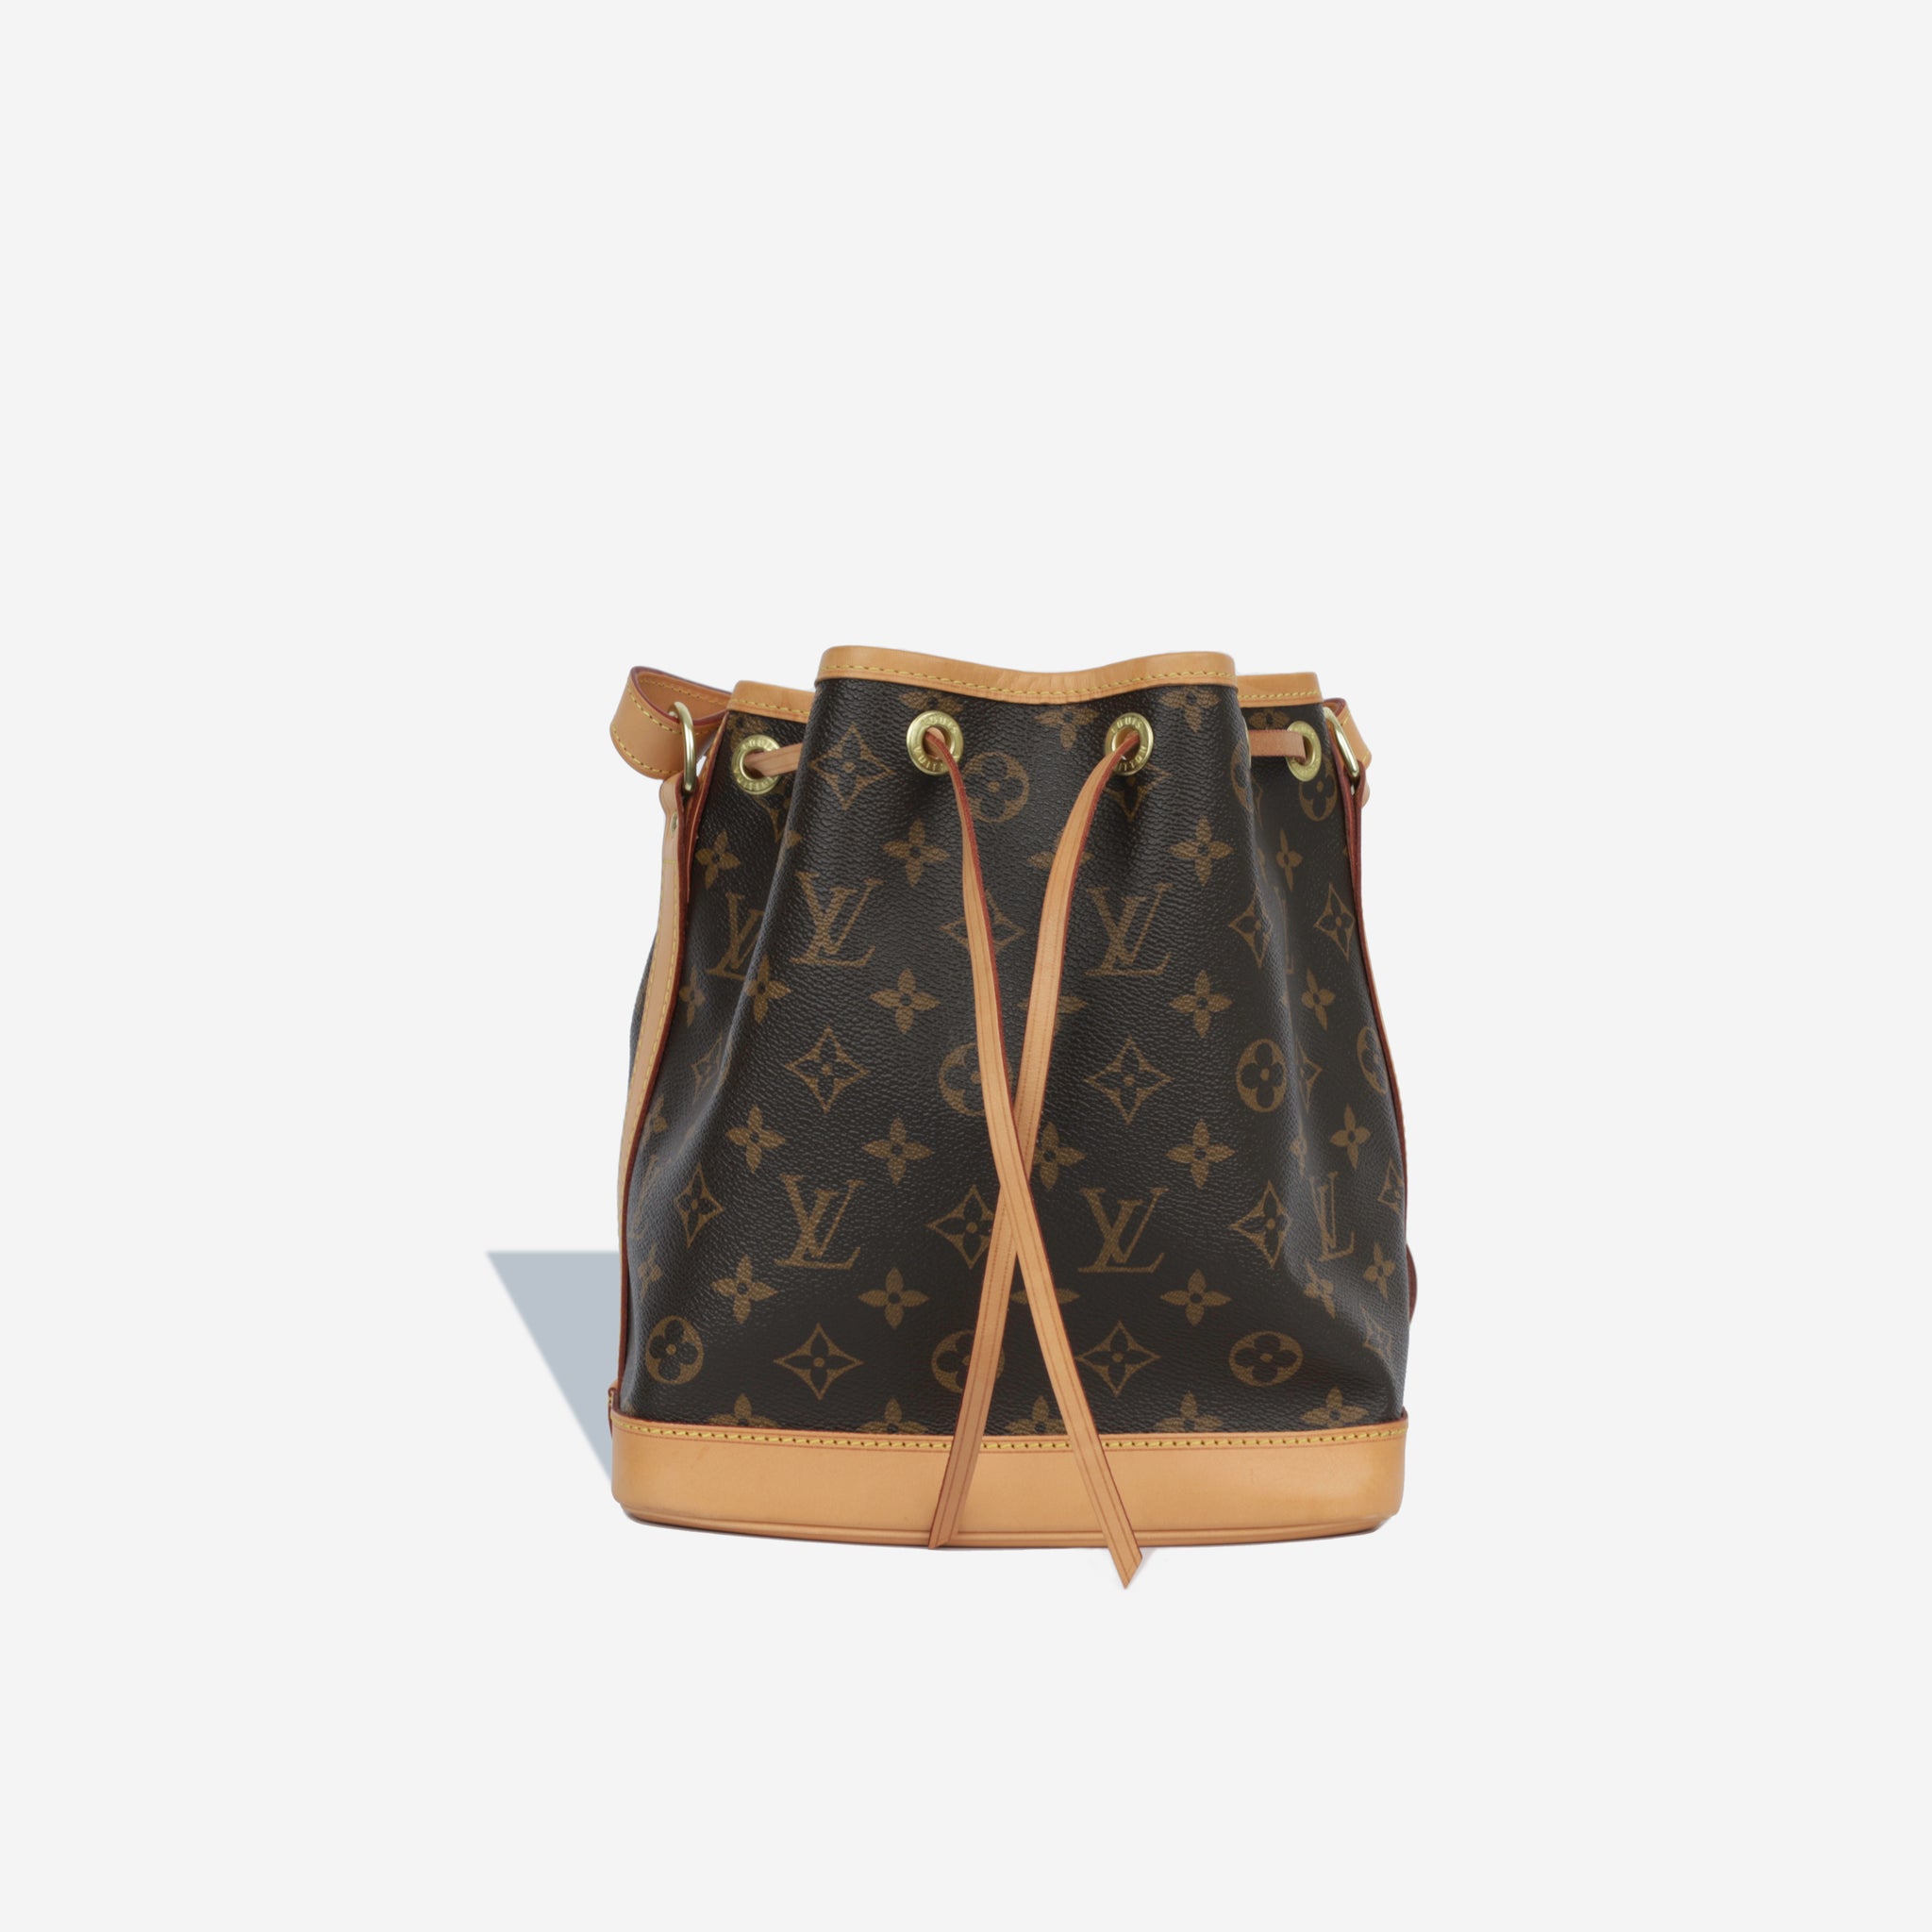 Louis Vuitton Pre-loved Monogram Noe Bb Bag in Brown